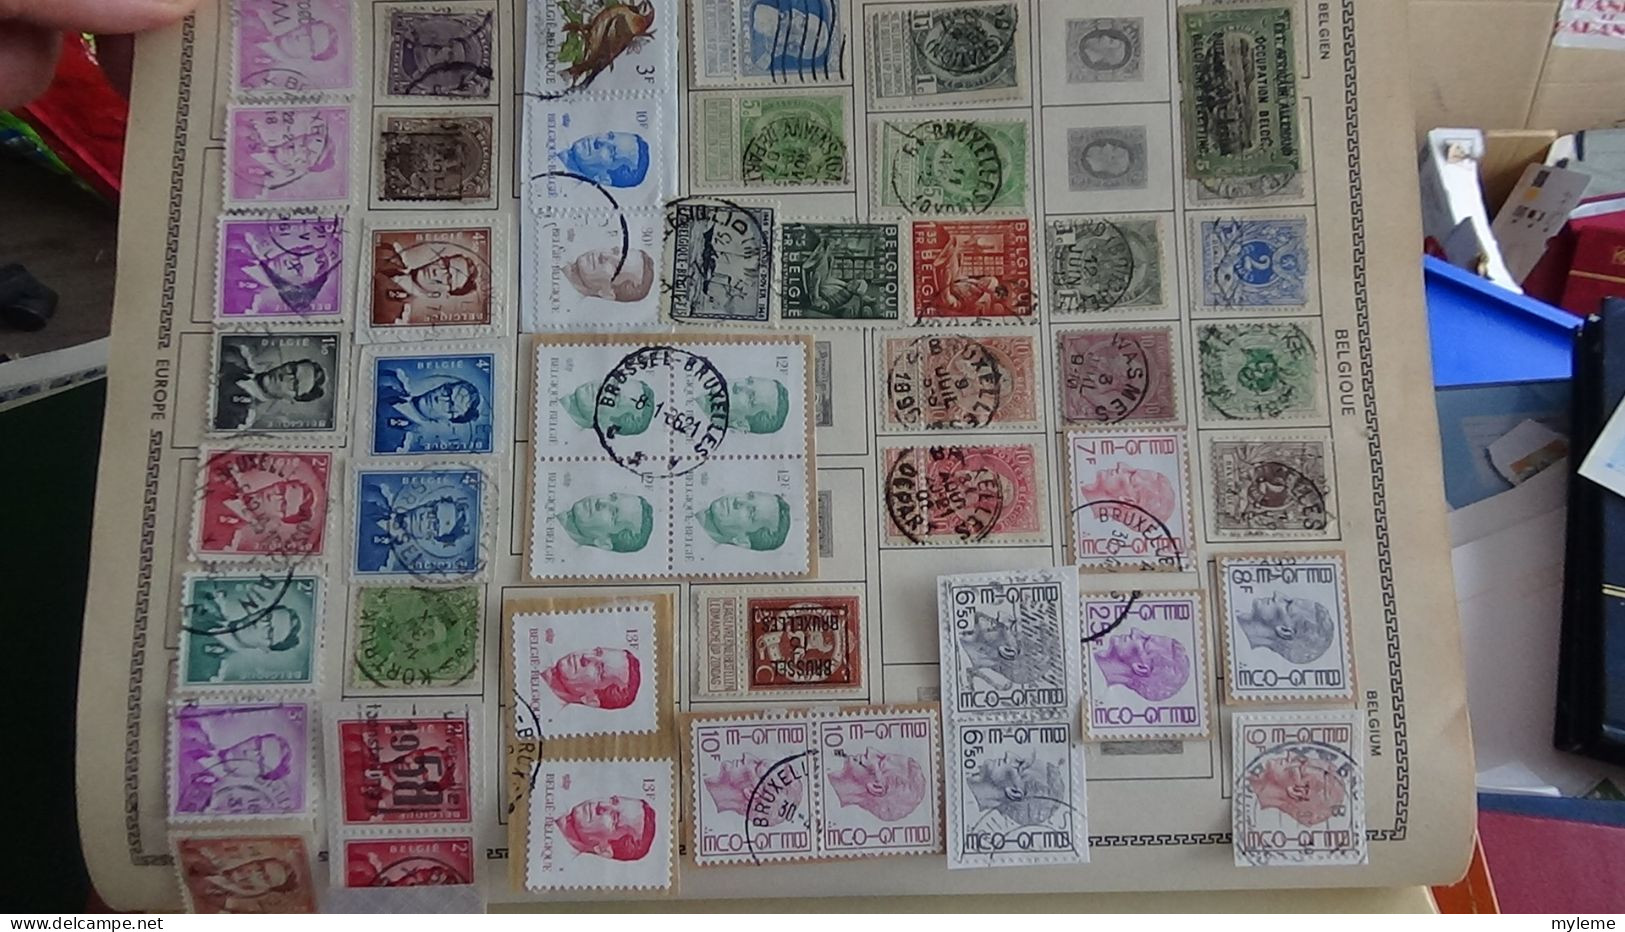 AZ146 Album de timbres oblitérés (toutes les photo n'ont pas été prises + plaquette de timbres ** de France. A saisir !!